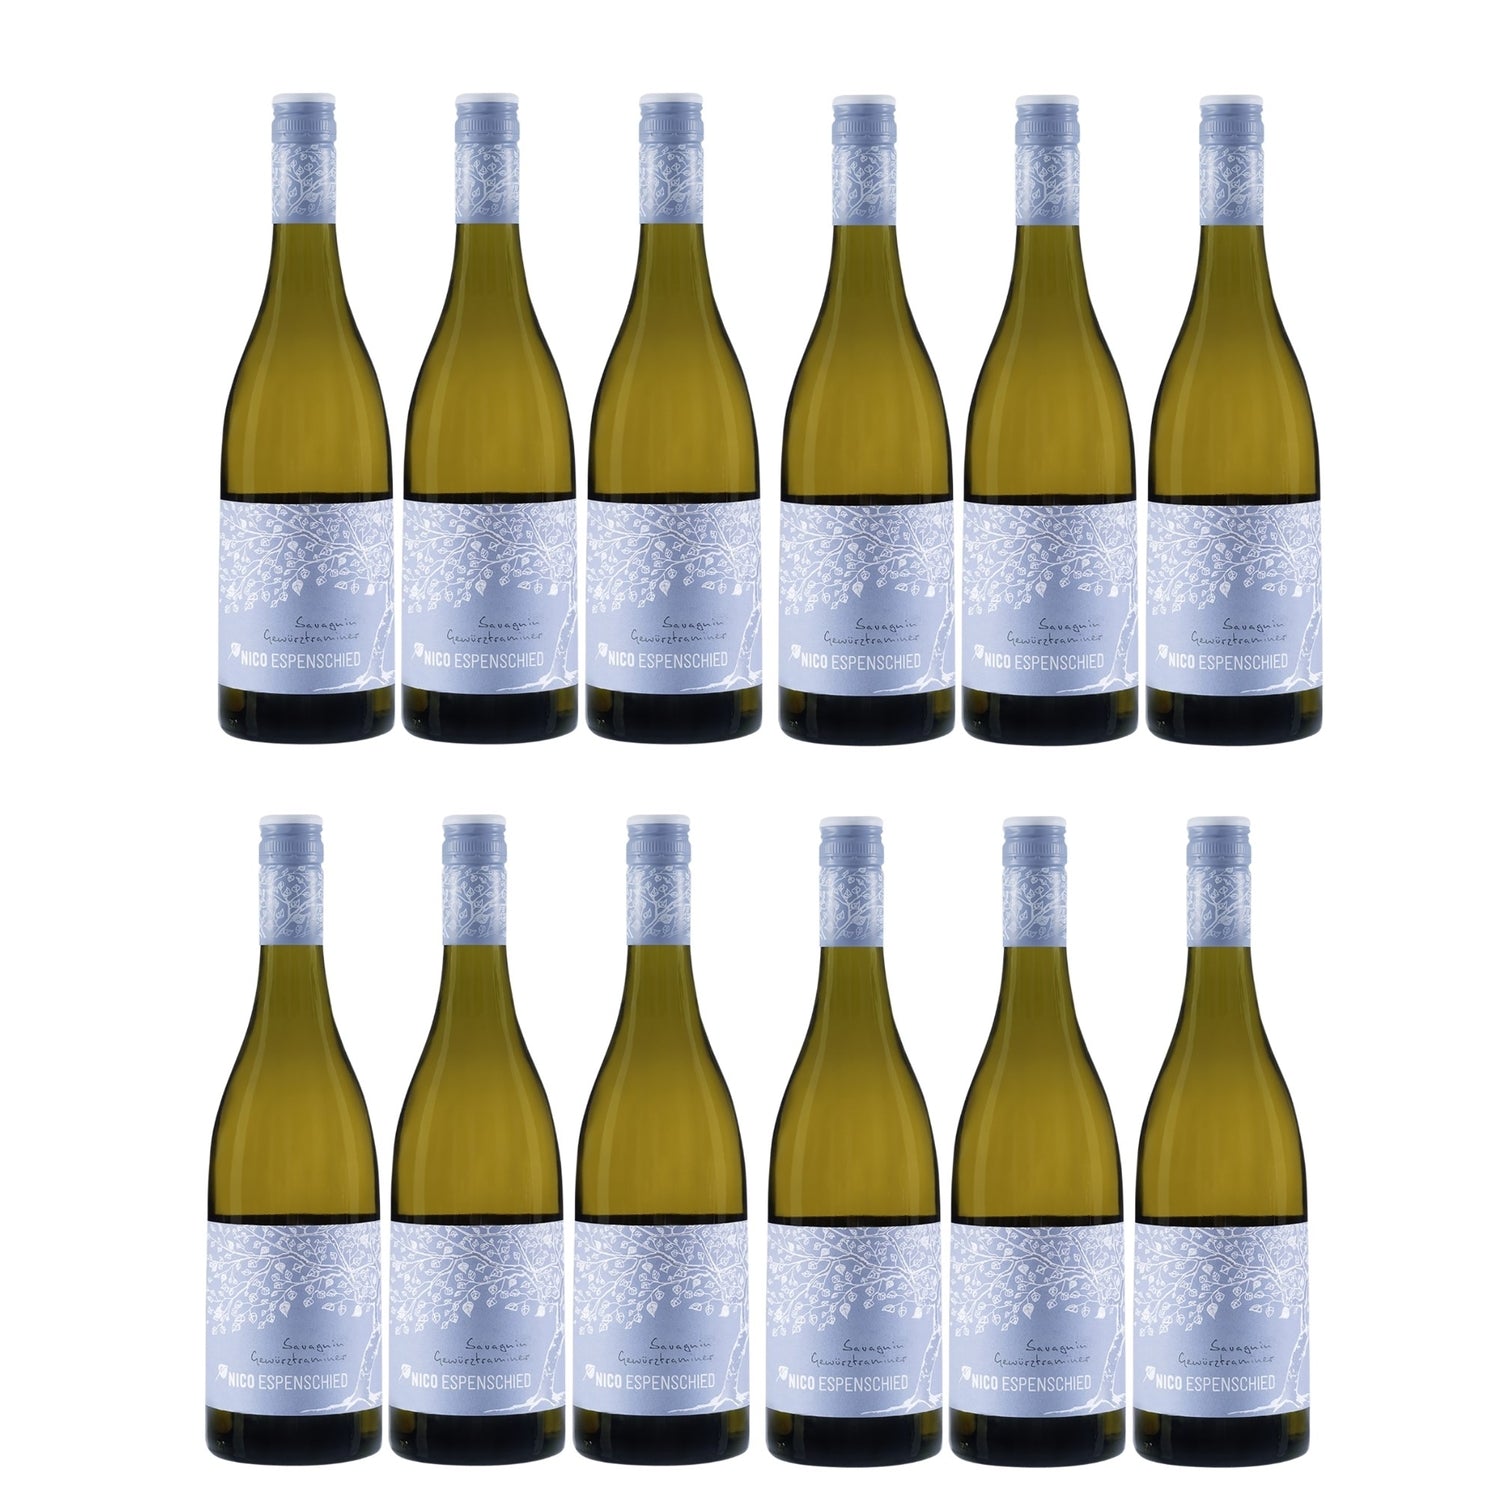 Nico Espenschied Roter Traminer Hautnah Orange Wine Weißwein veganer Wein trocken (12 x 0.75l) - Versanel -